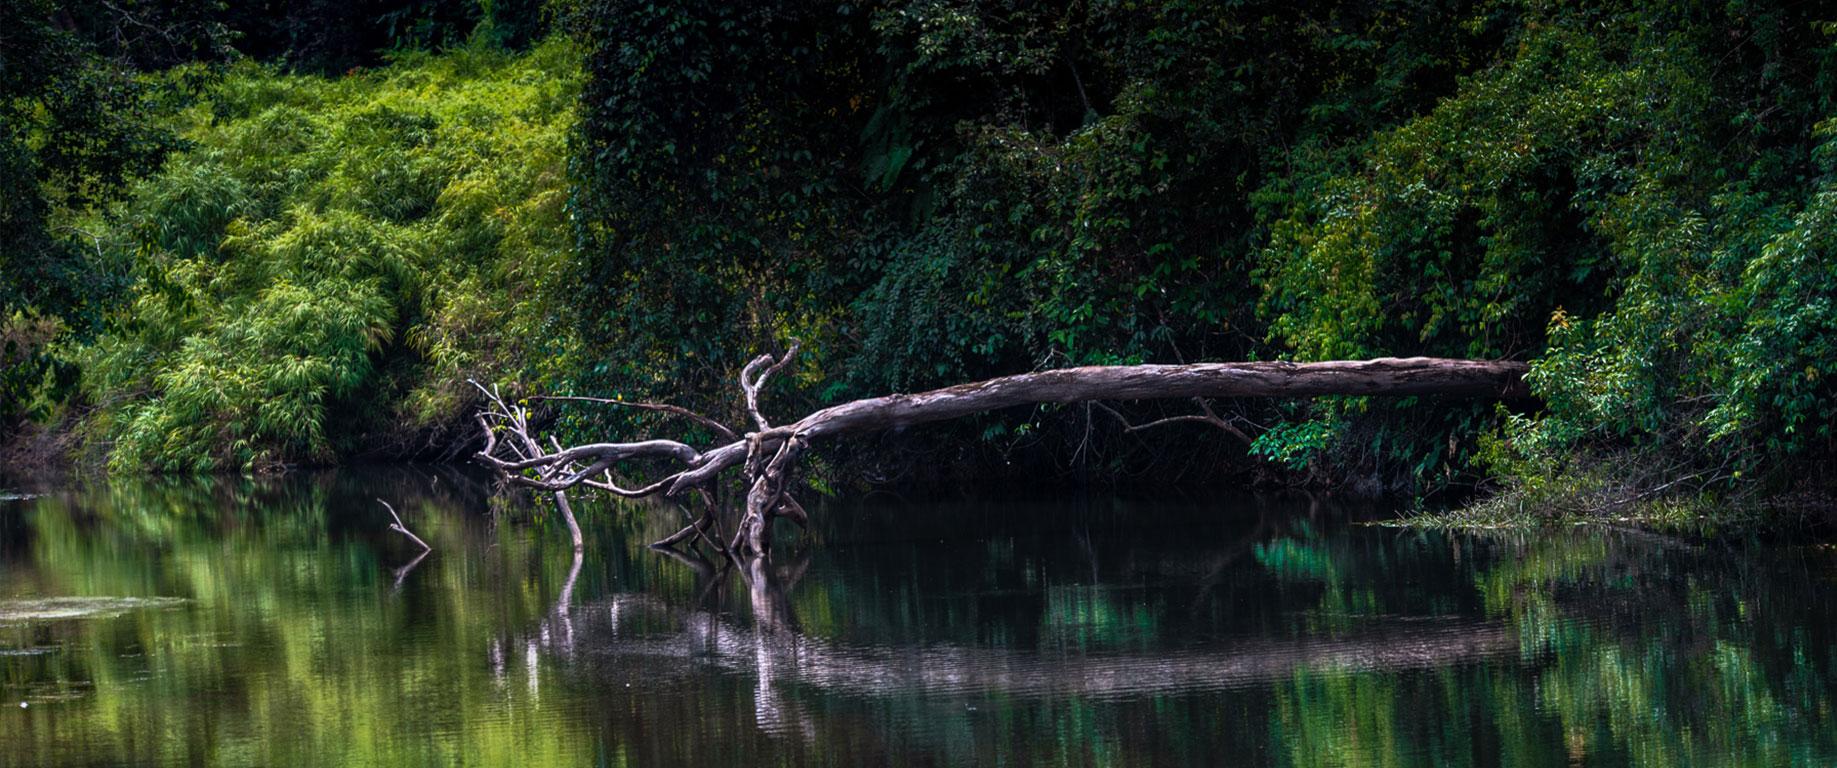 Paulo Behar Landscape Photograph - The Amazon Forest, Brazil